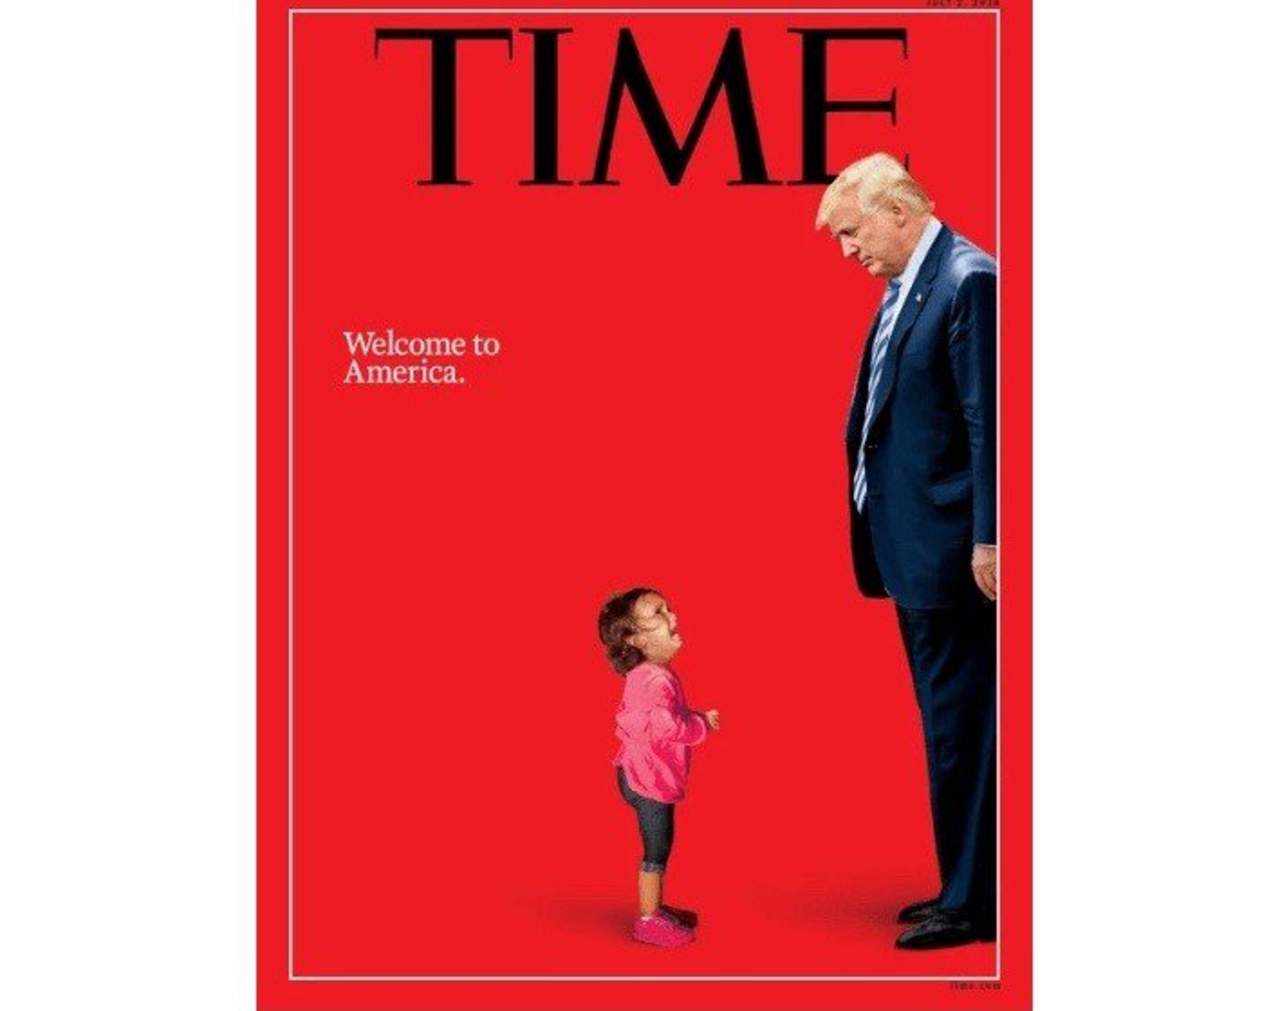 'Es vergonzoso que los demócratas y los medios de comunicación hayan explotado esta foto de una niña pequeña para impulsar su agenda (política). A ella no la separaron de su madre', dijo Sanders en un mensaje en Twitter. (ARCHIVO)